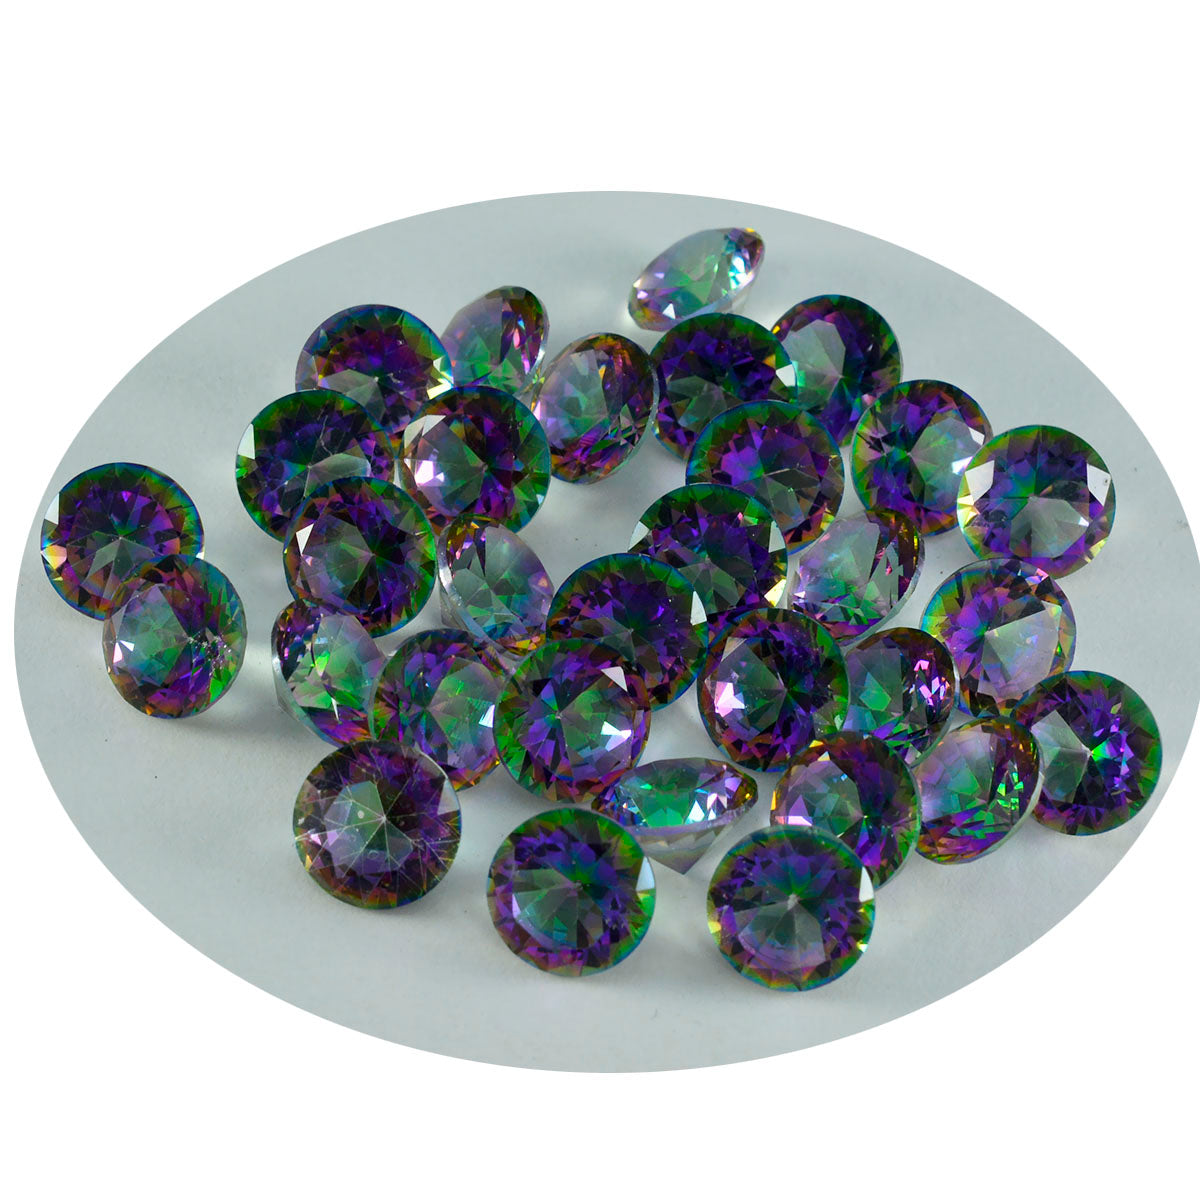 riyogems 1 шт., разноцветный мистический кварц, граненый 7x7 мм, круглая форма, красивый качественный камень